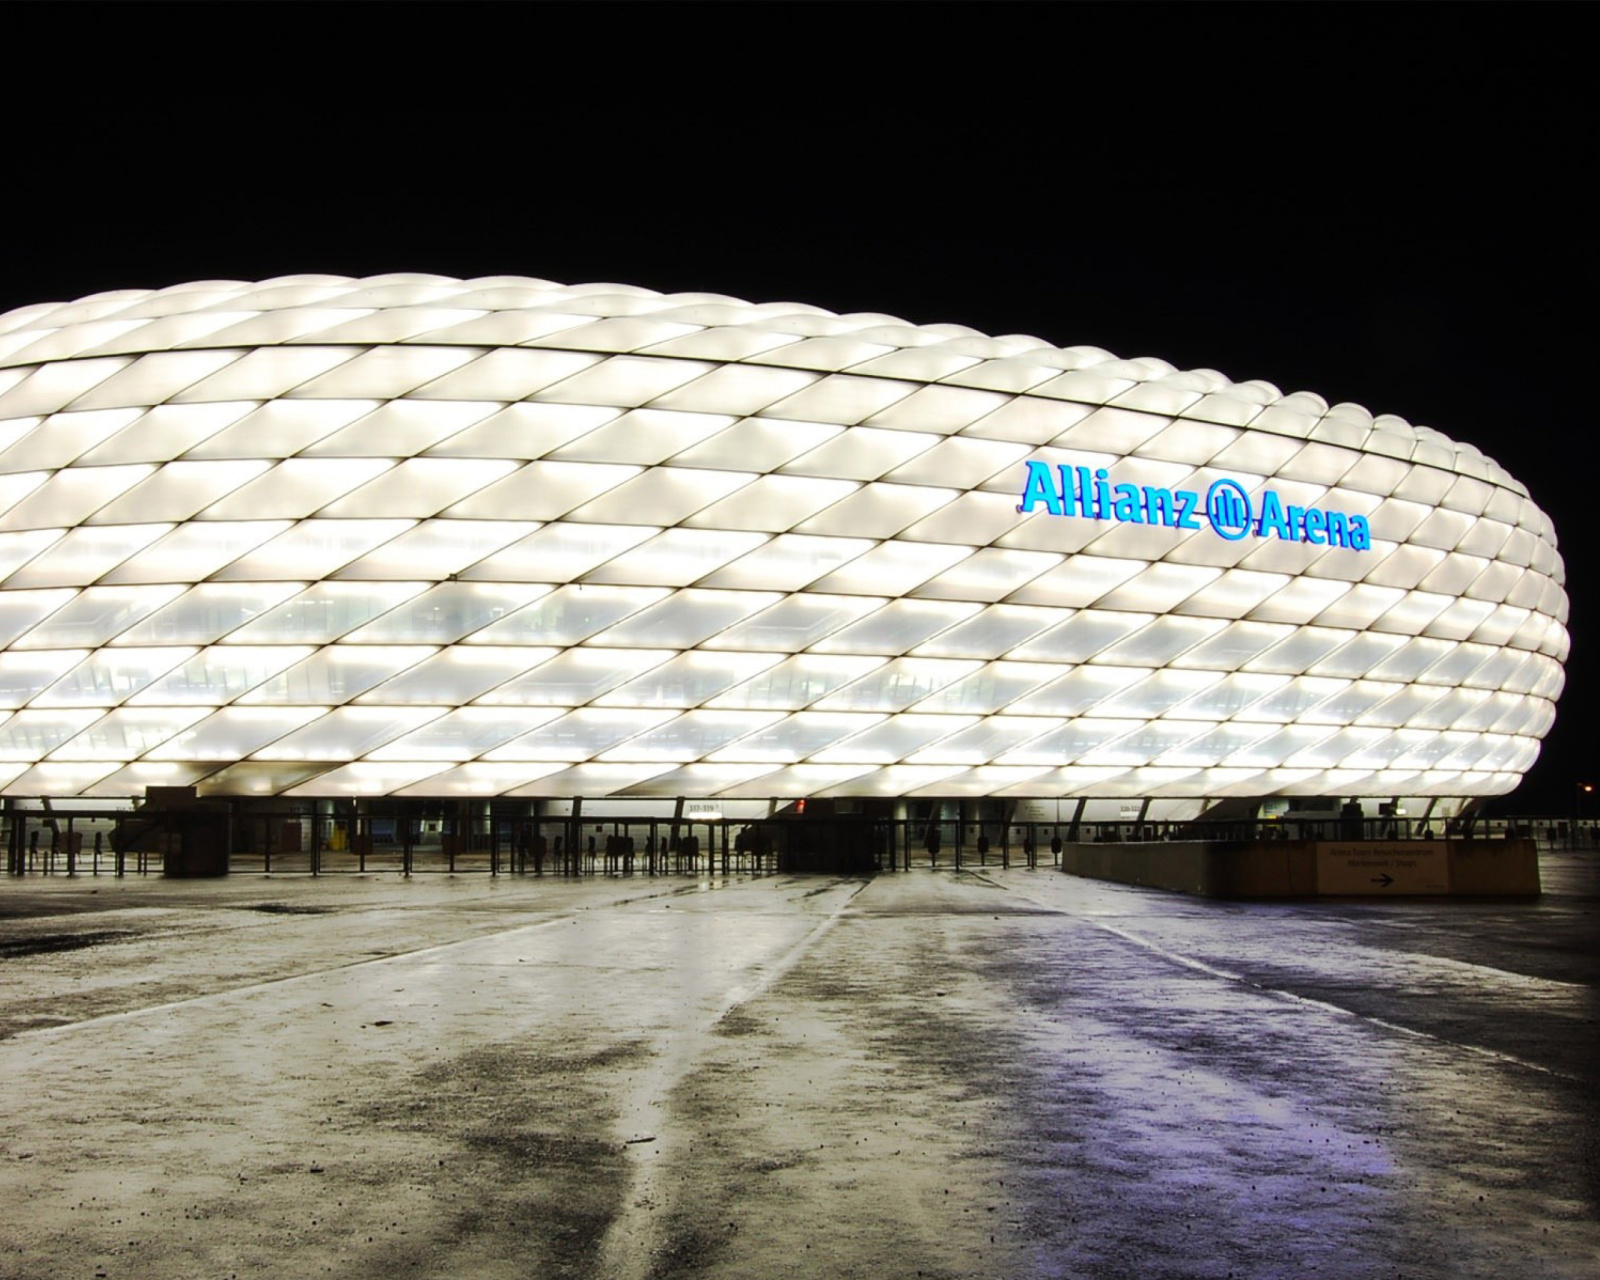 Allianz Arena is stadium in Munich screenshot #1 1600x1280